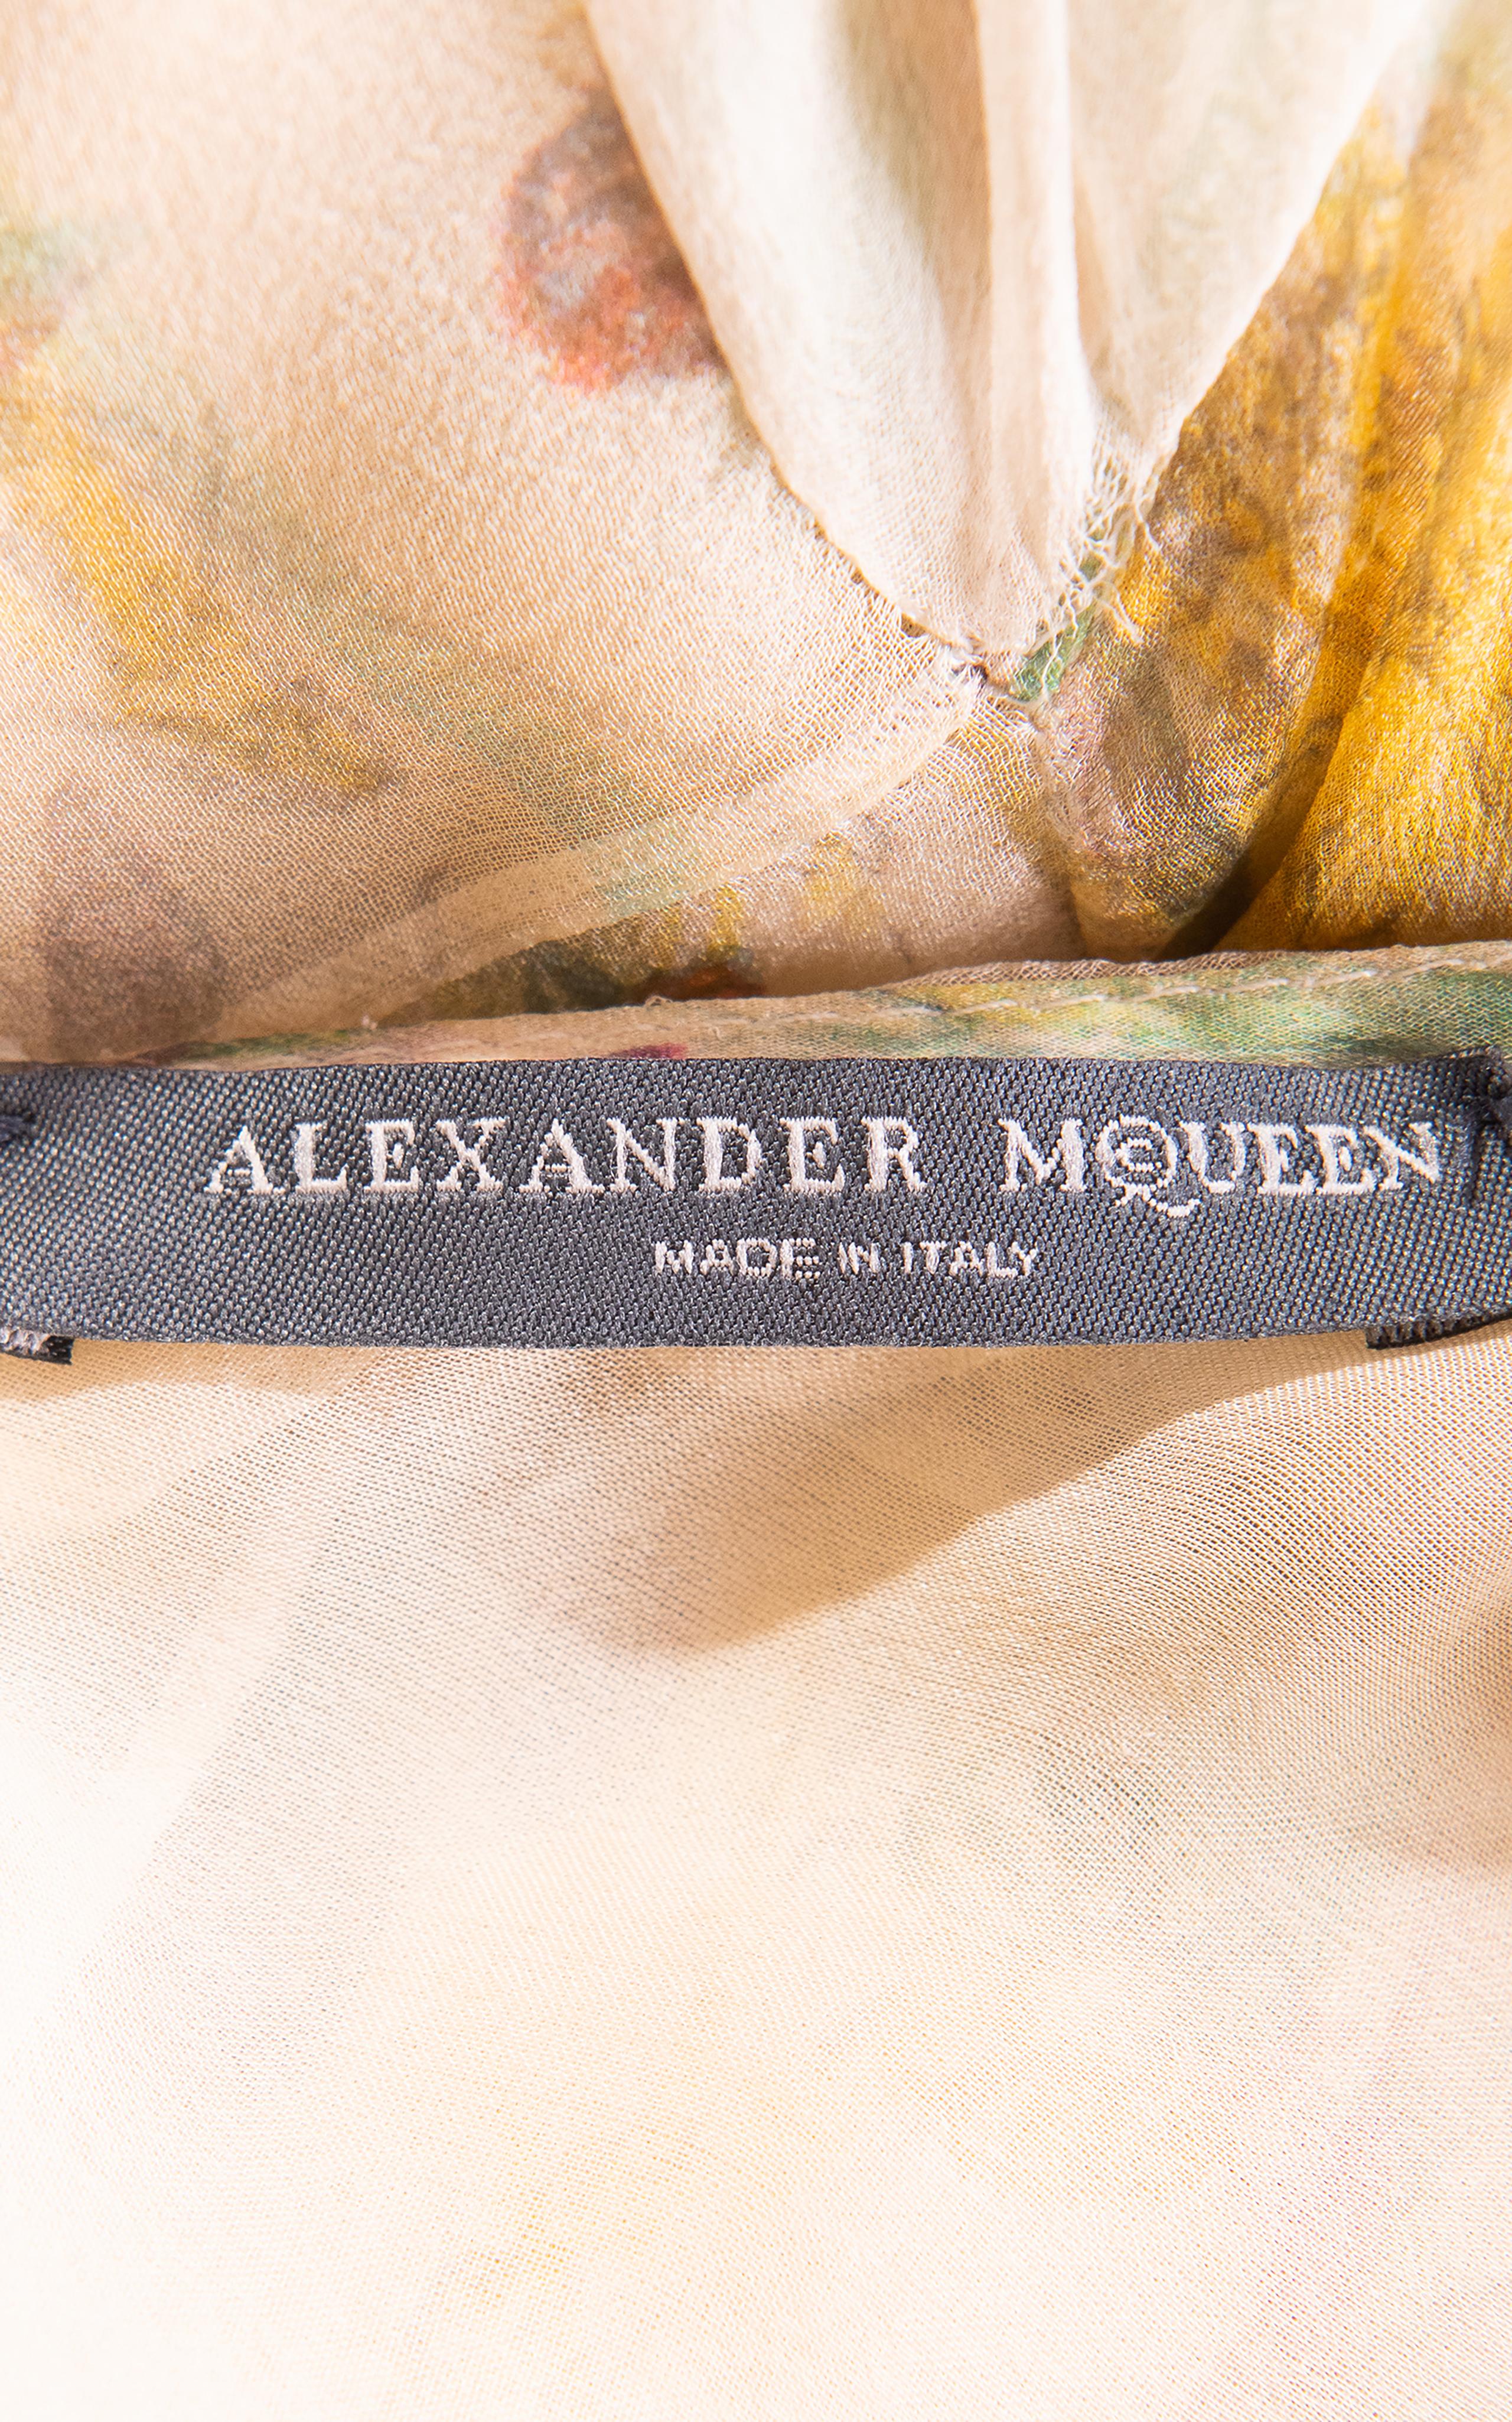 S/S 2004 Alexander McQueen Floral Print Bias Cut Silk Chiffon Flutter Gown 7